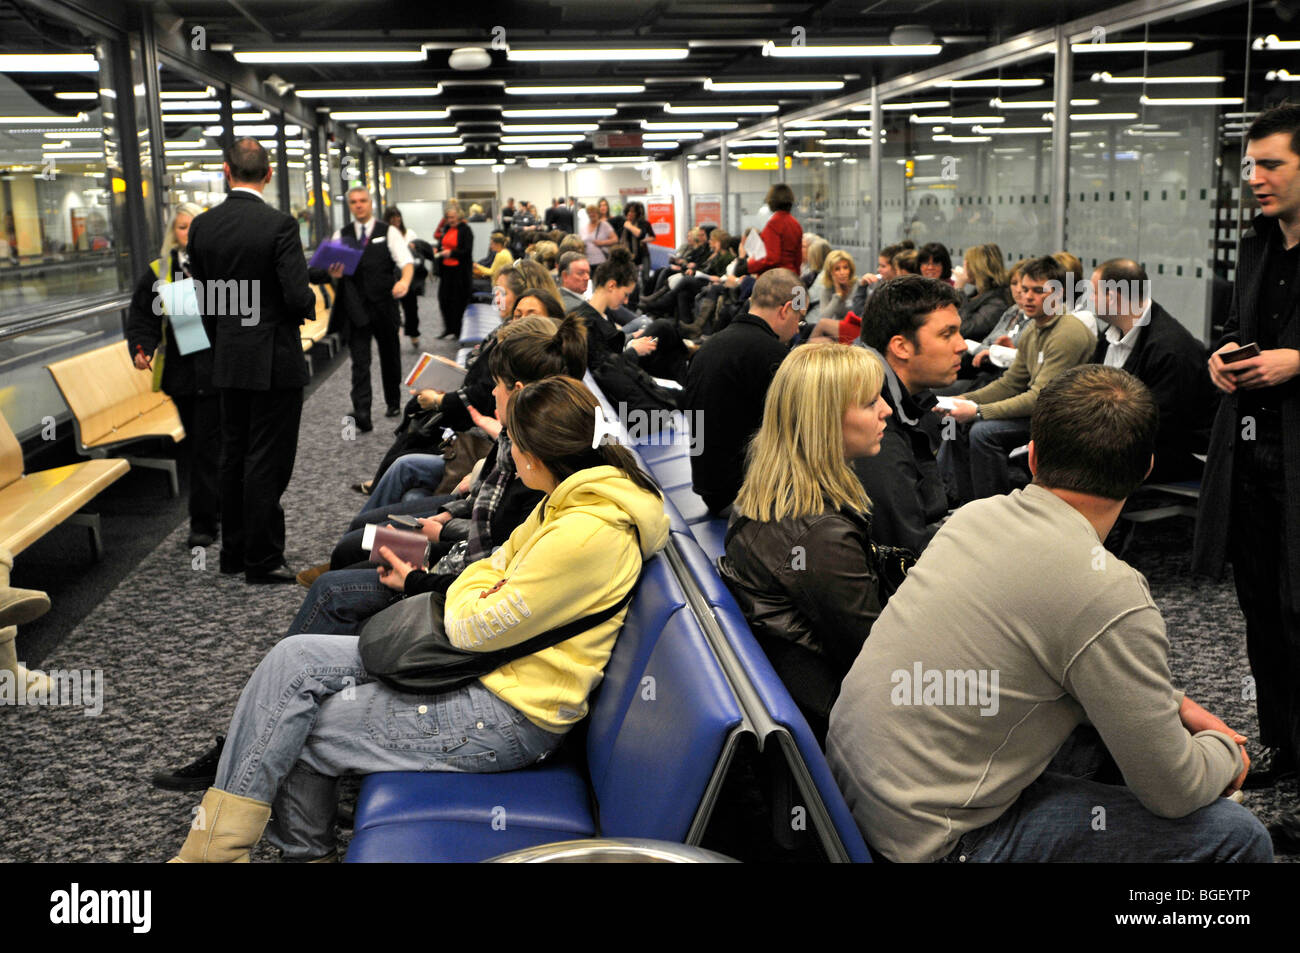 La salle d'embarquement de l'aéroport, générique, Gatwick, Londres, UK Banque D'Images